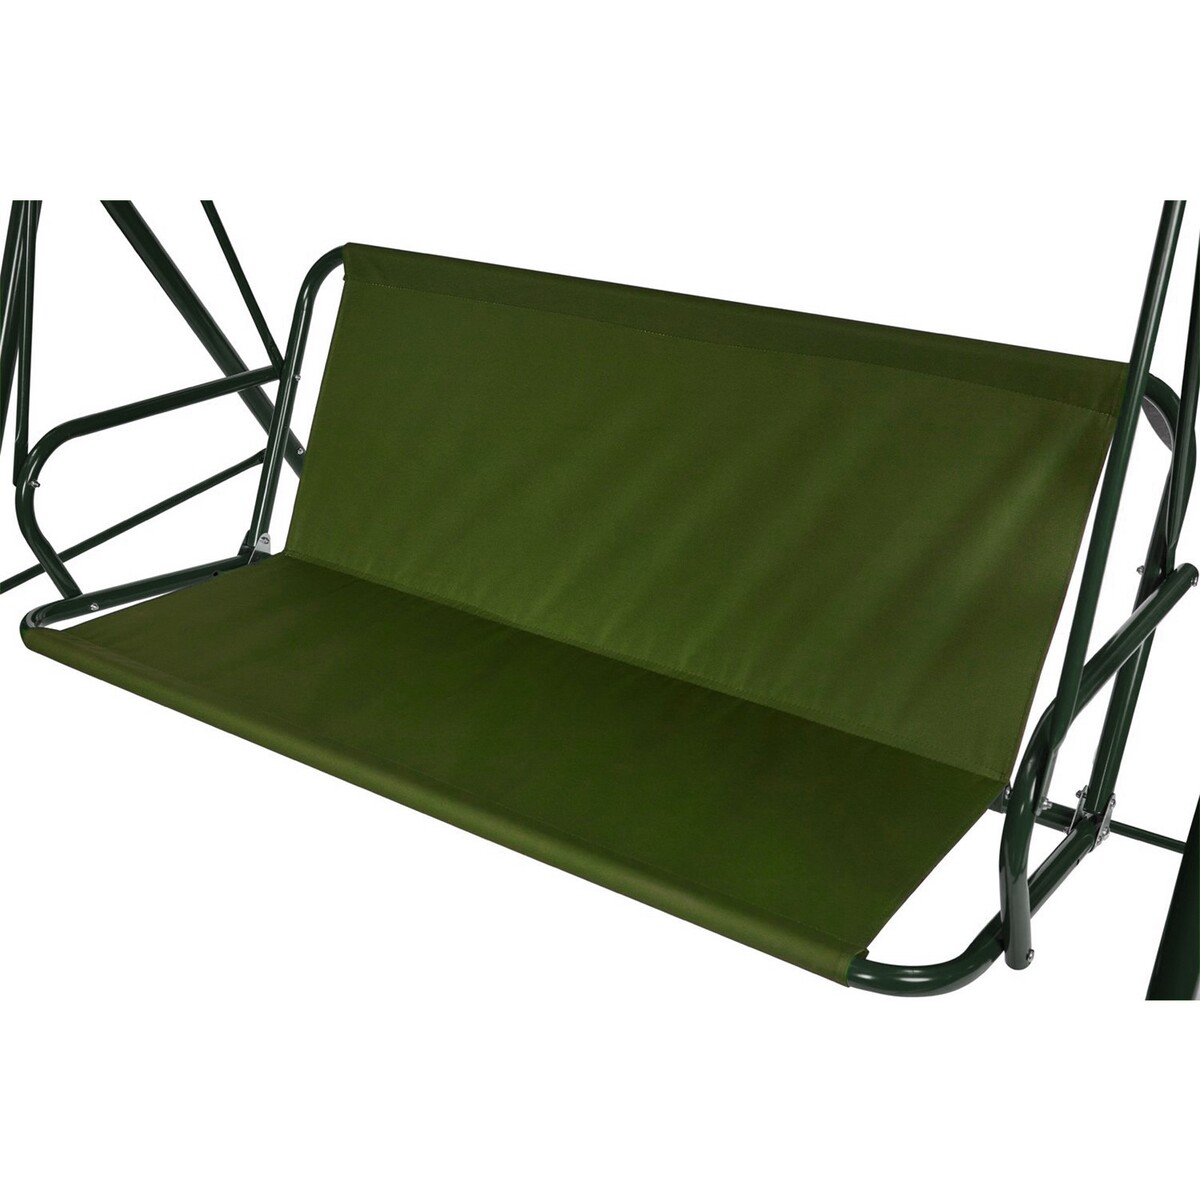 Усиленное тканевое сиденье для садовых качелей 170x52/49 см, оксфорд 600, олива No brand, цвет зеленый 02852691 - фото 1